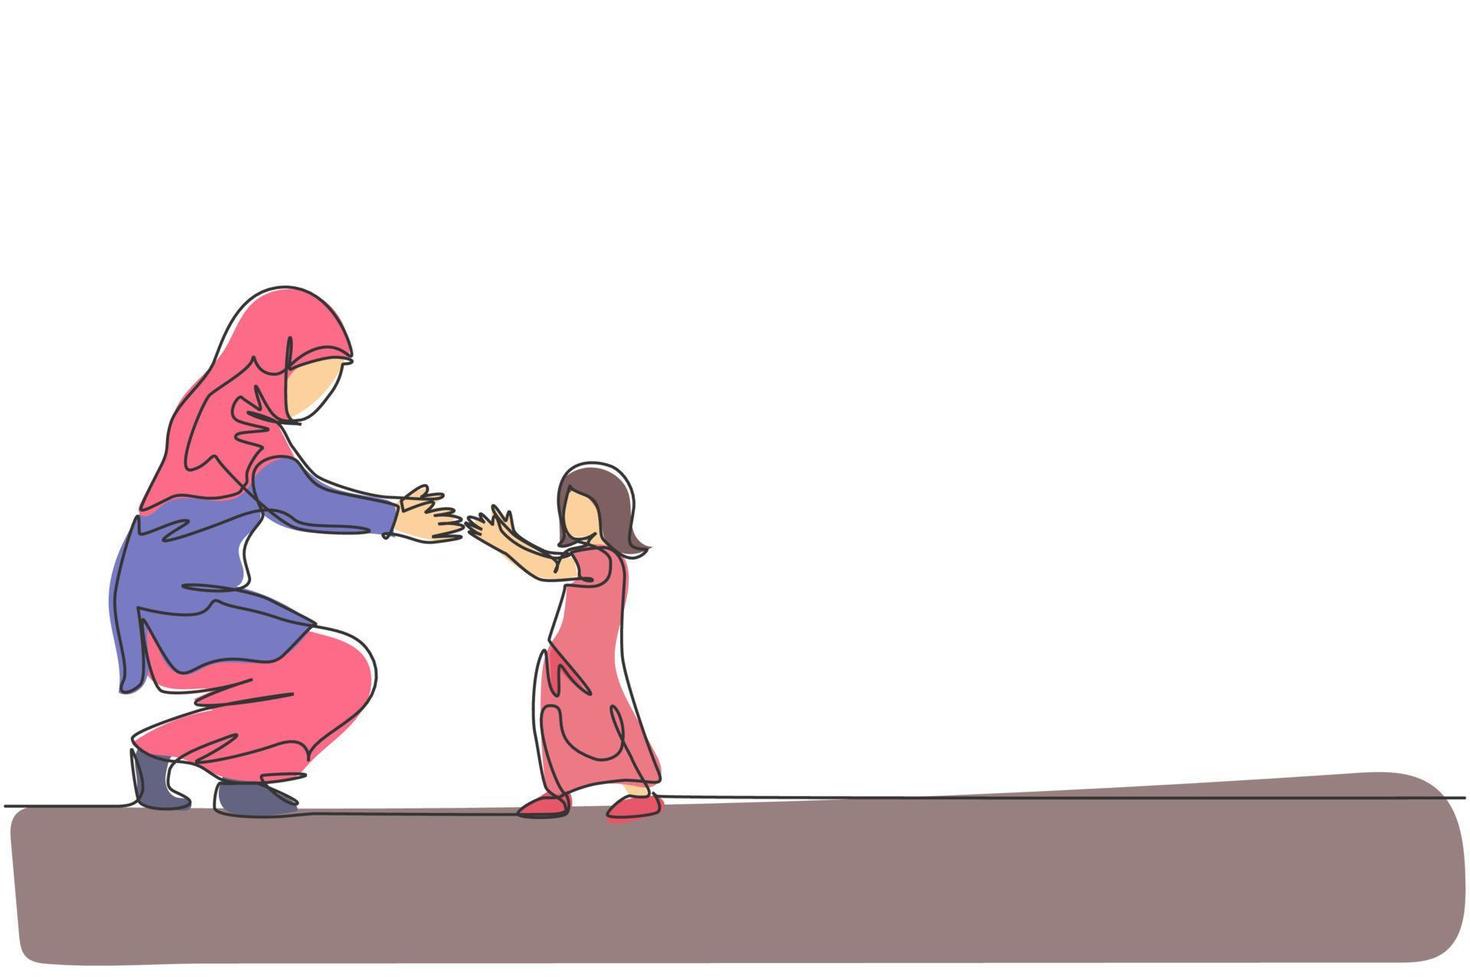 um desenho de linha contínua da filha de uma criança pequena islâmica aprende a andar enquanto a mãe está pronta para pegá-la. conceito de família parentalidade muçulmana árabe feliz. ilustração em vetor desenho dinâmico de desenho de linha única